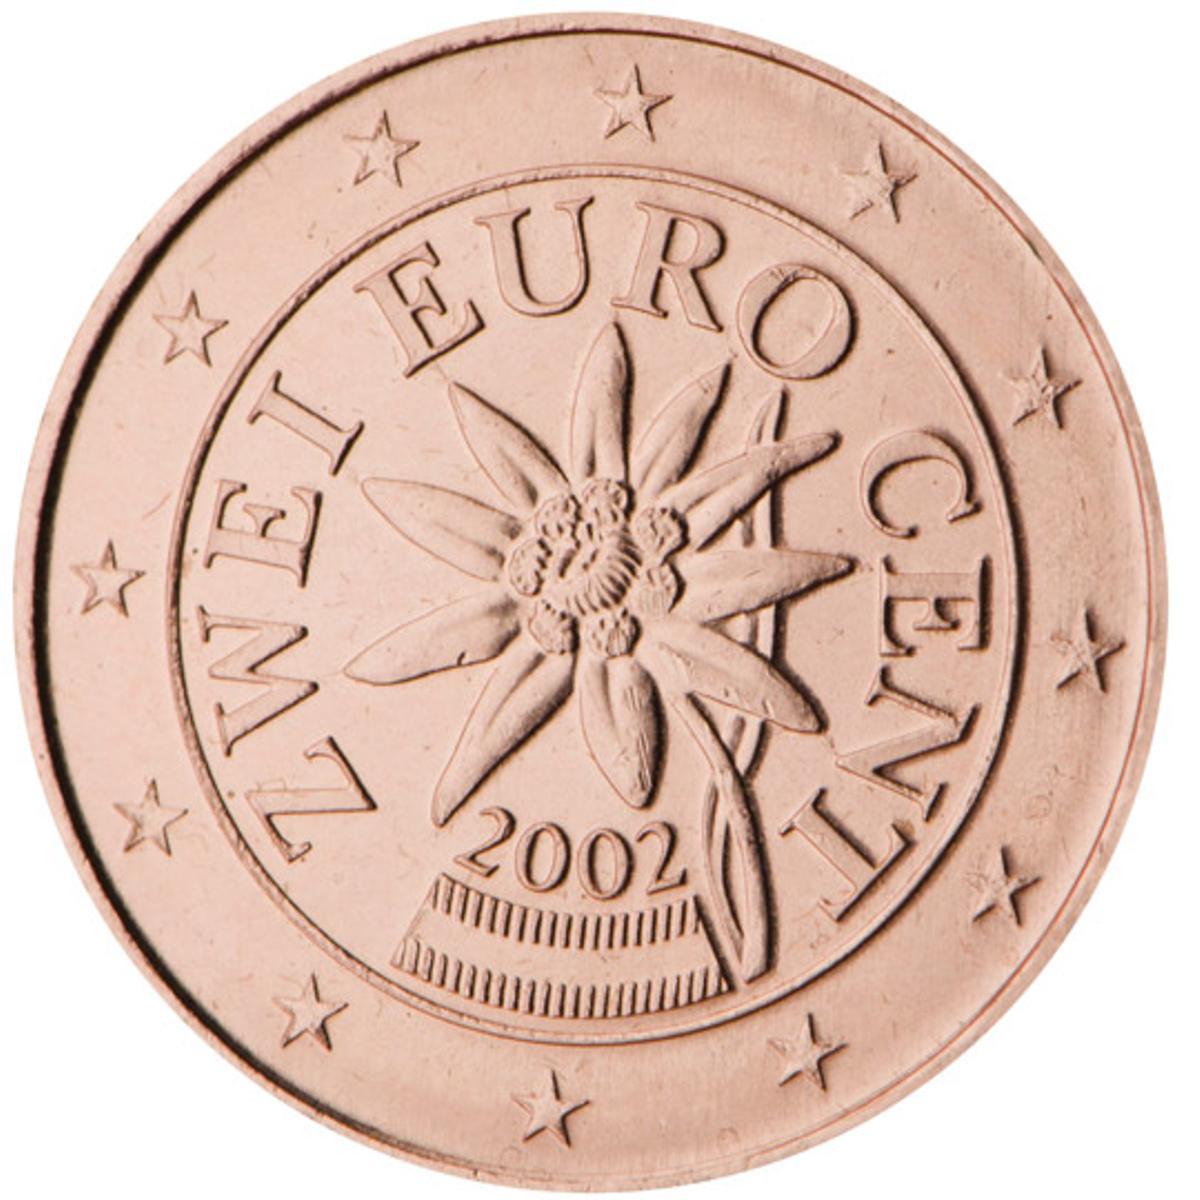 Moneda austriaca de dos céntimos